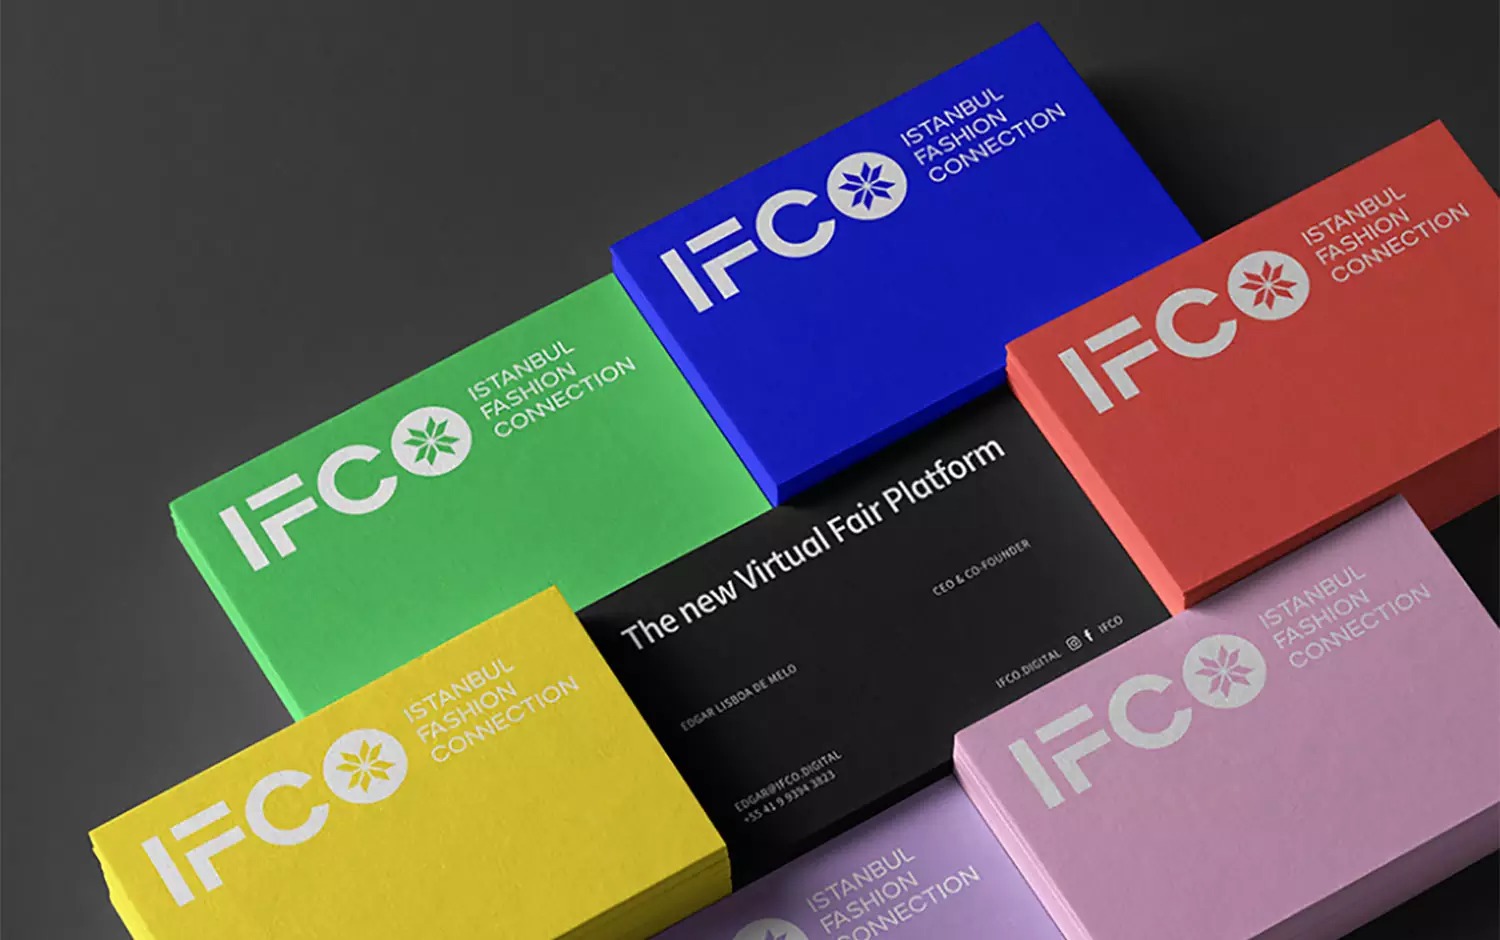 伊斯坦布尔时装展(IFCO)品牌形象设计